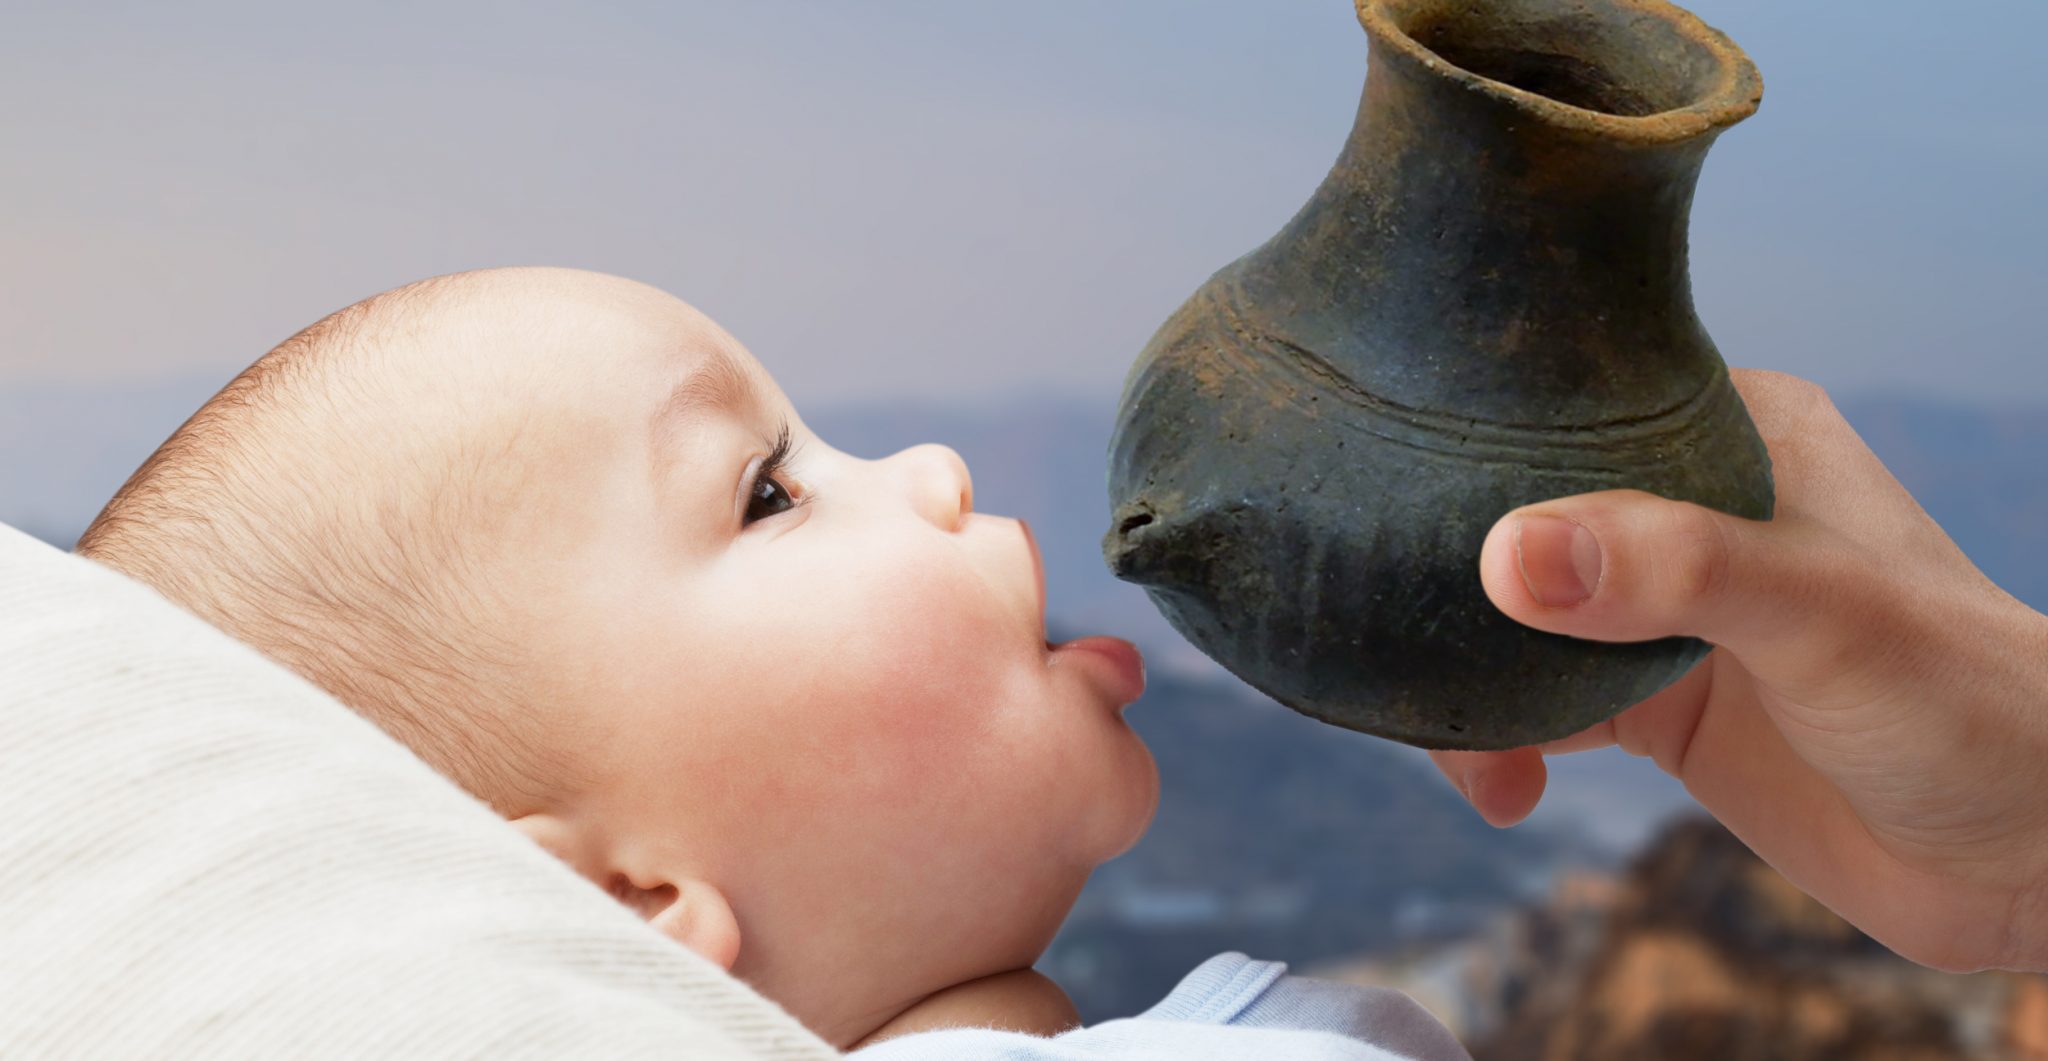 Prehistoric baby bottle